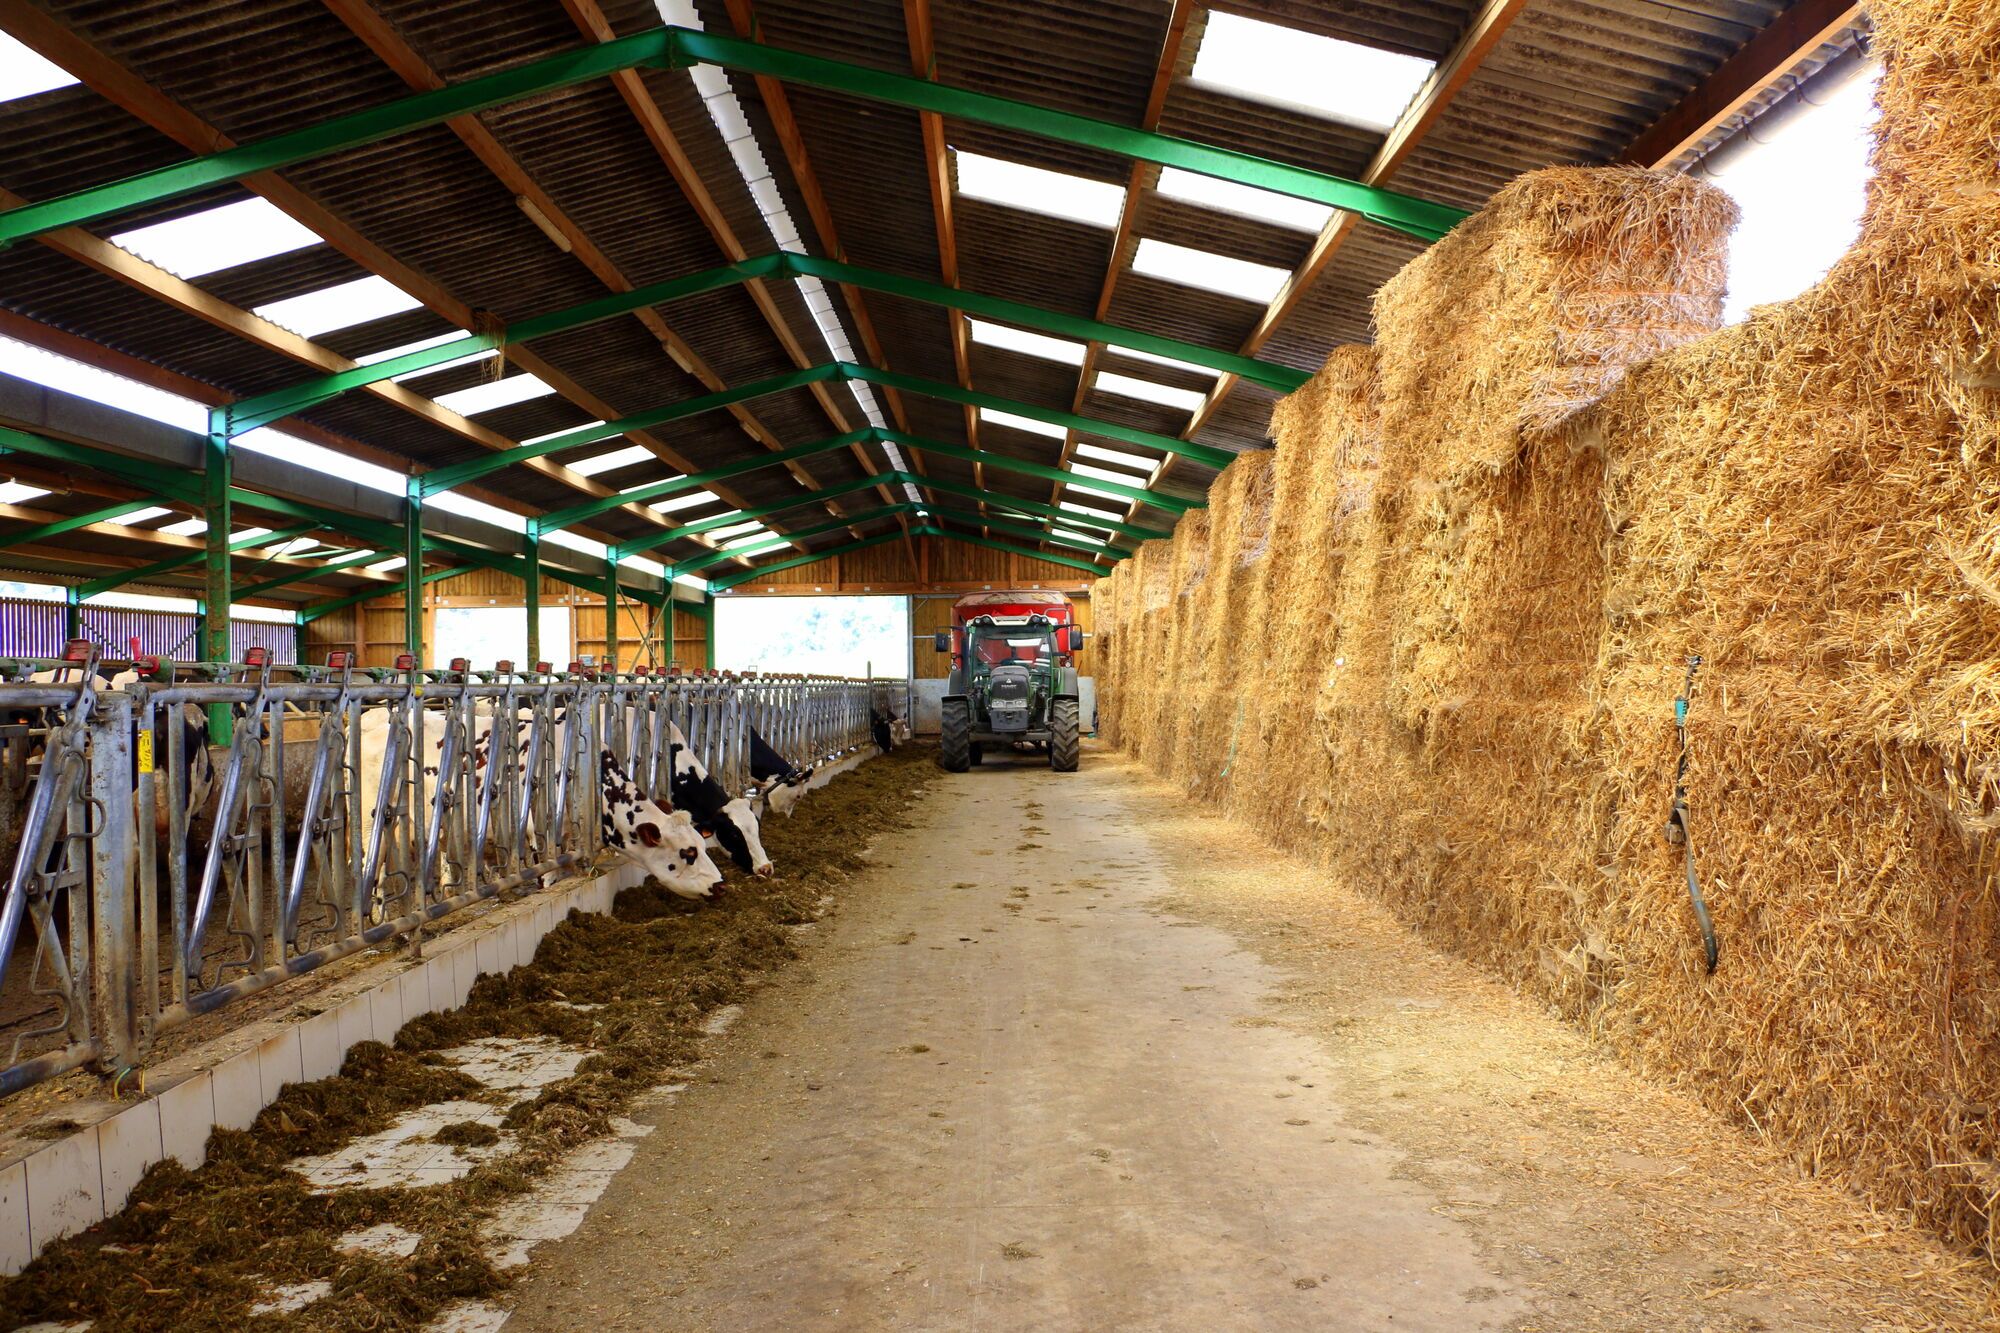 לדוראן יש עדר של 60 פרות האחראיות על ייצור החלב לגבינות הקממבר